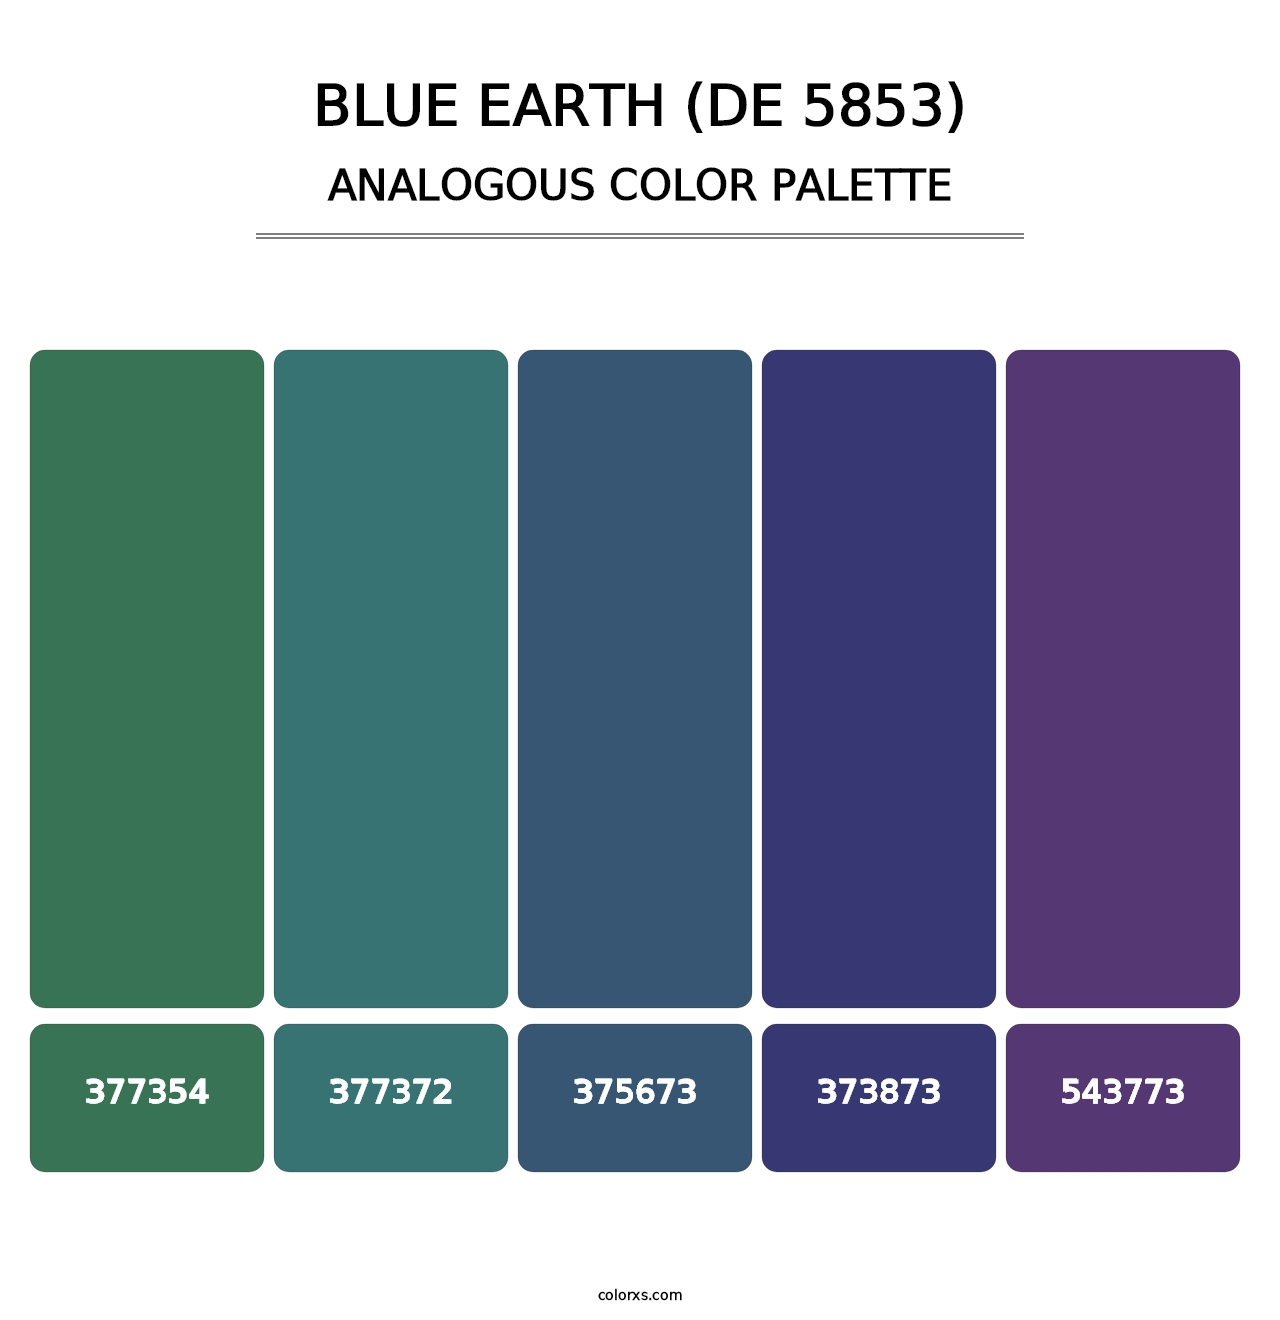 Blue Earth (DE 5853) - Analogous Color Palette